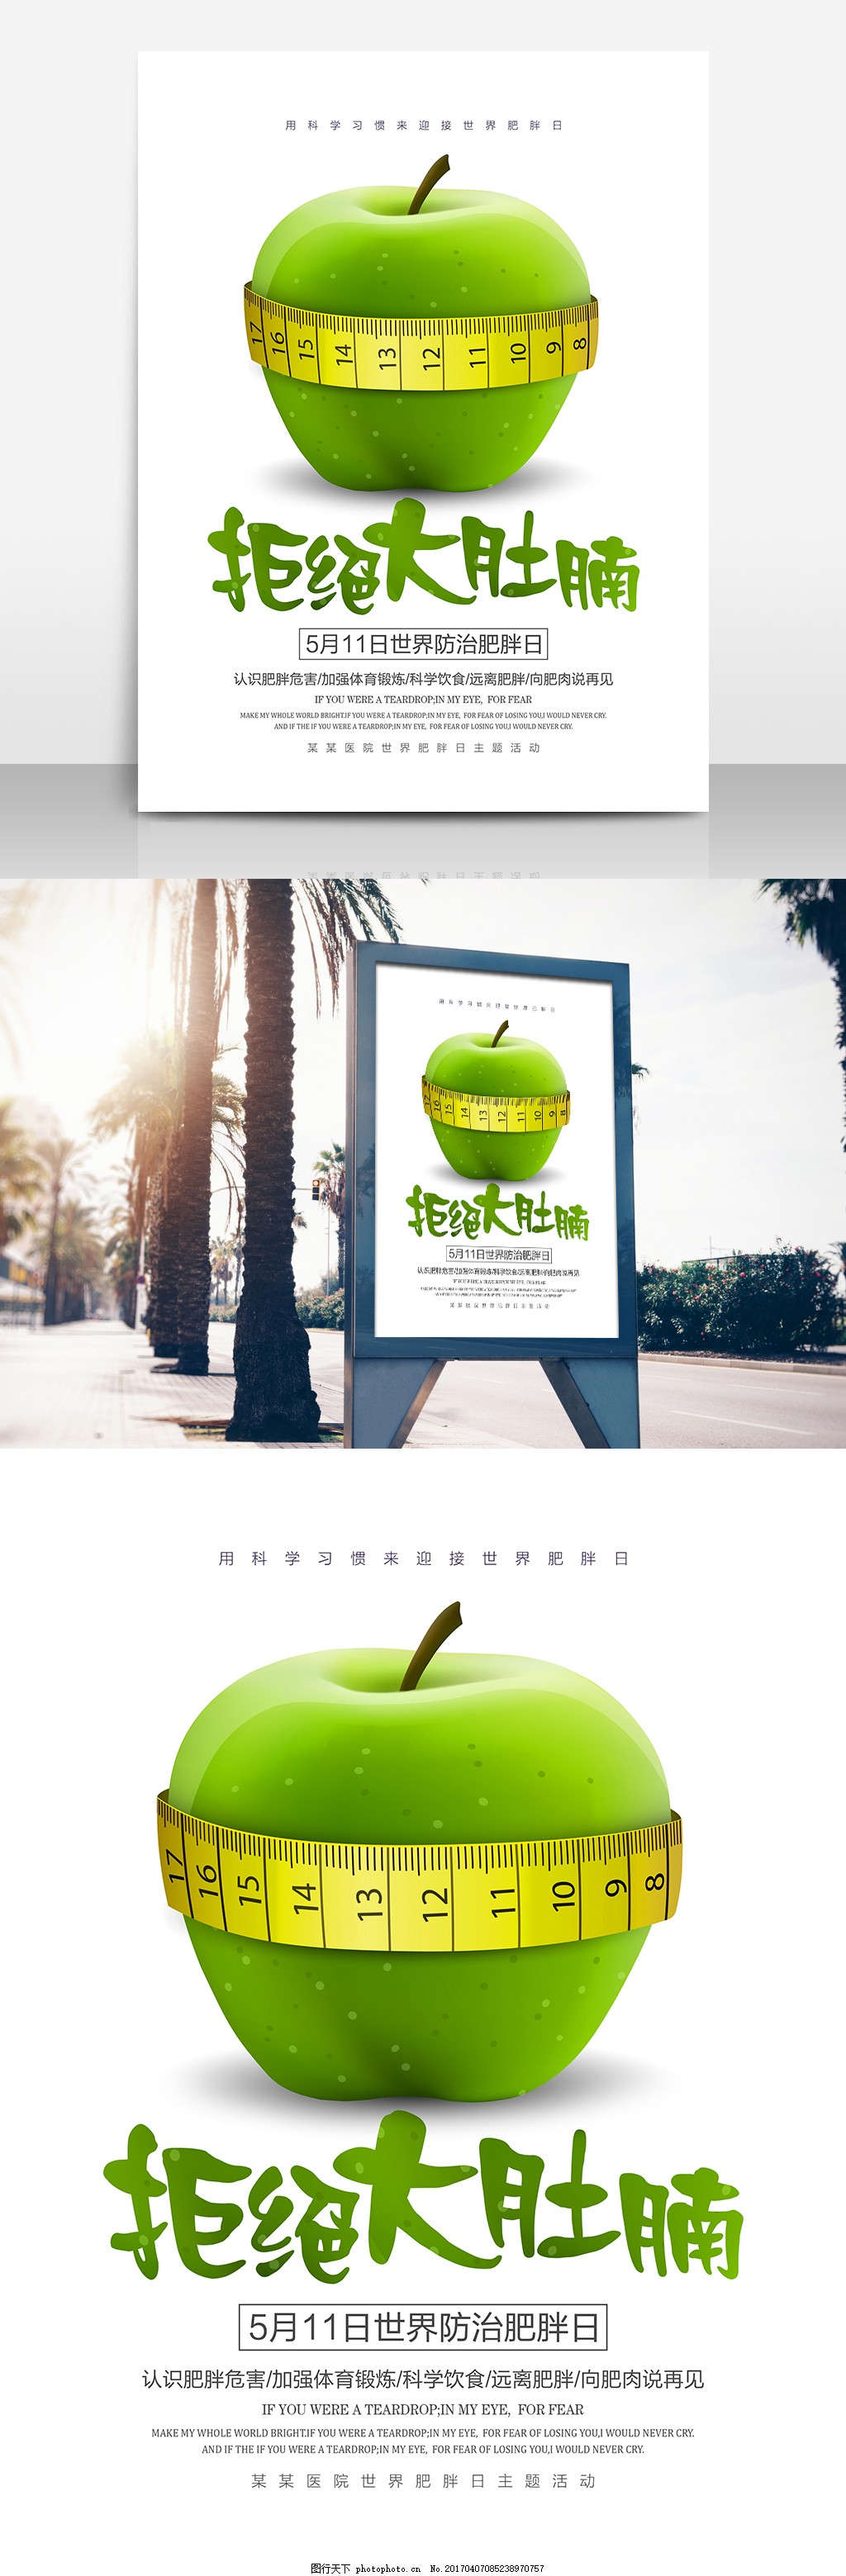 世界防治肥胖日酸性潮酷风减脂餐营销宣传海报-美图设计室